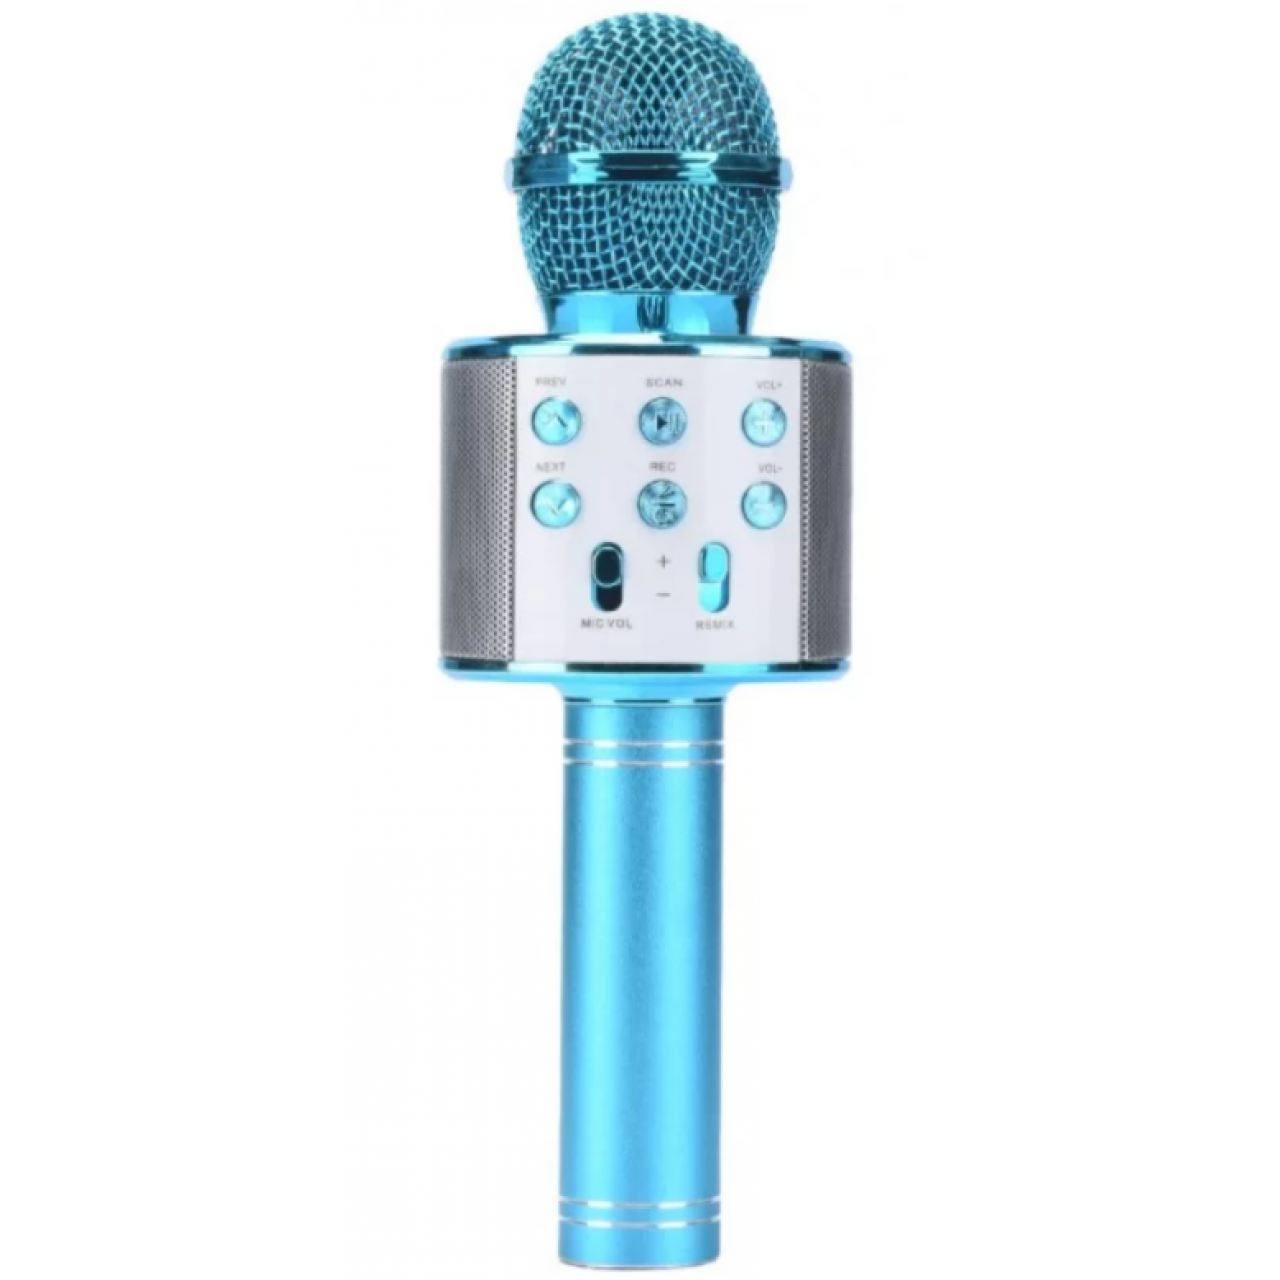 Ασύρματο Μικρόφωνο Bluetooth με Ενσωματωμένο Ηχείο και Karaoke WS-858 - Μπλε - 5792